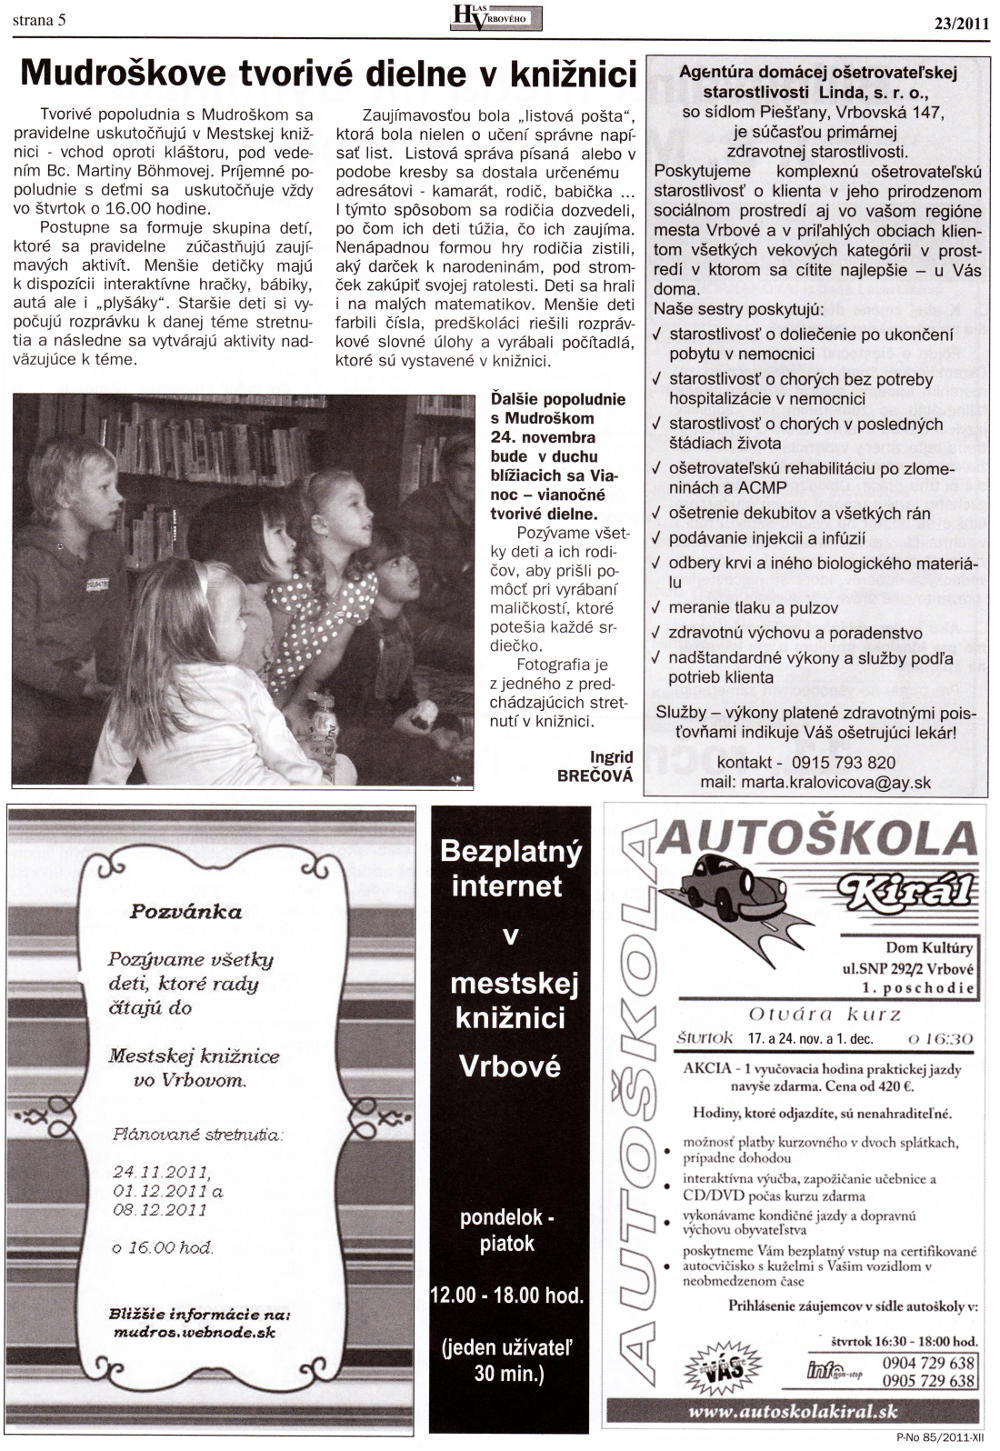 Hlas Vrbového 23/2011, strana 5